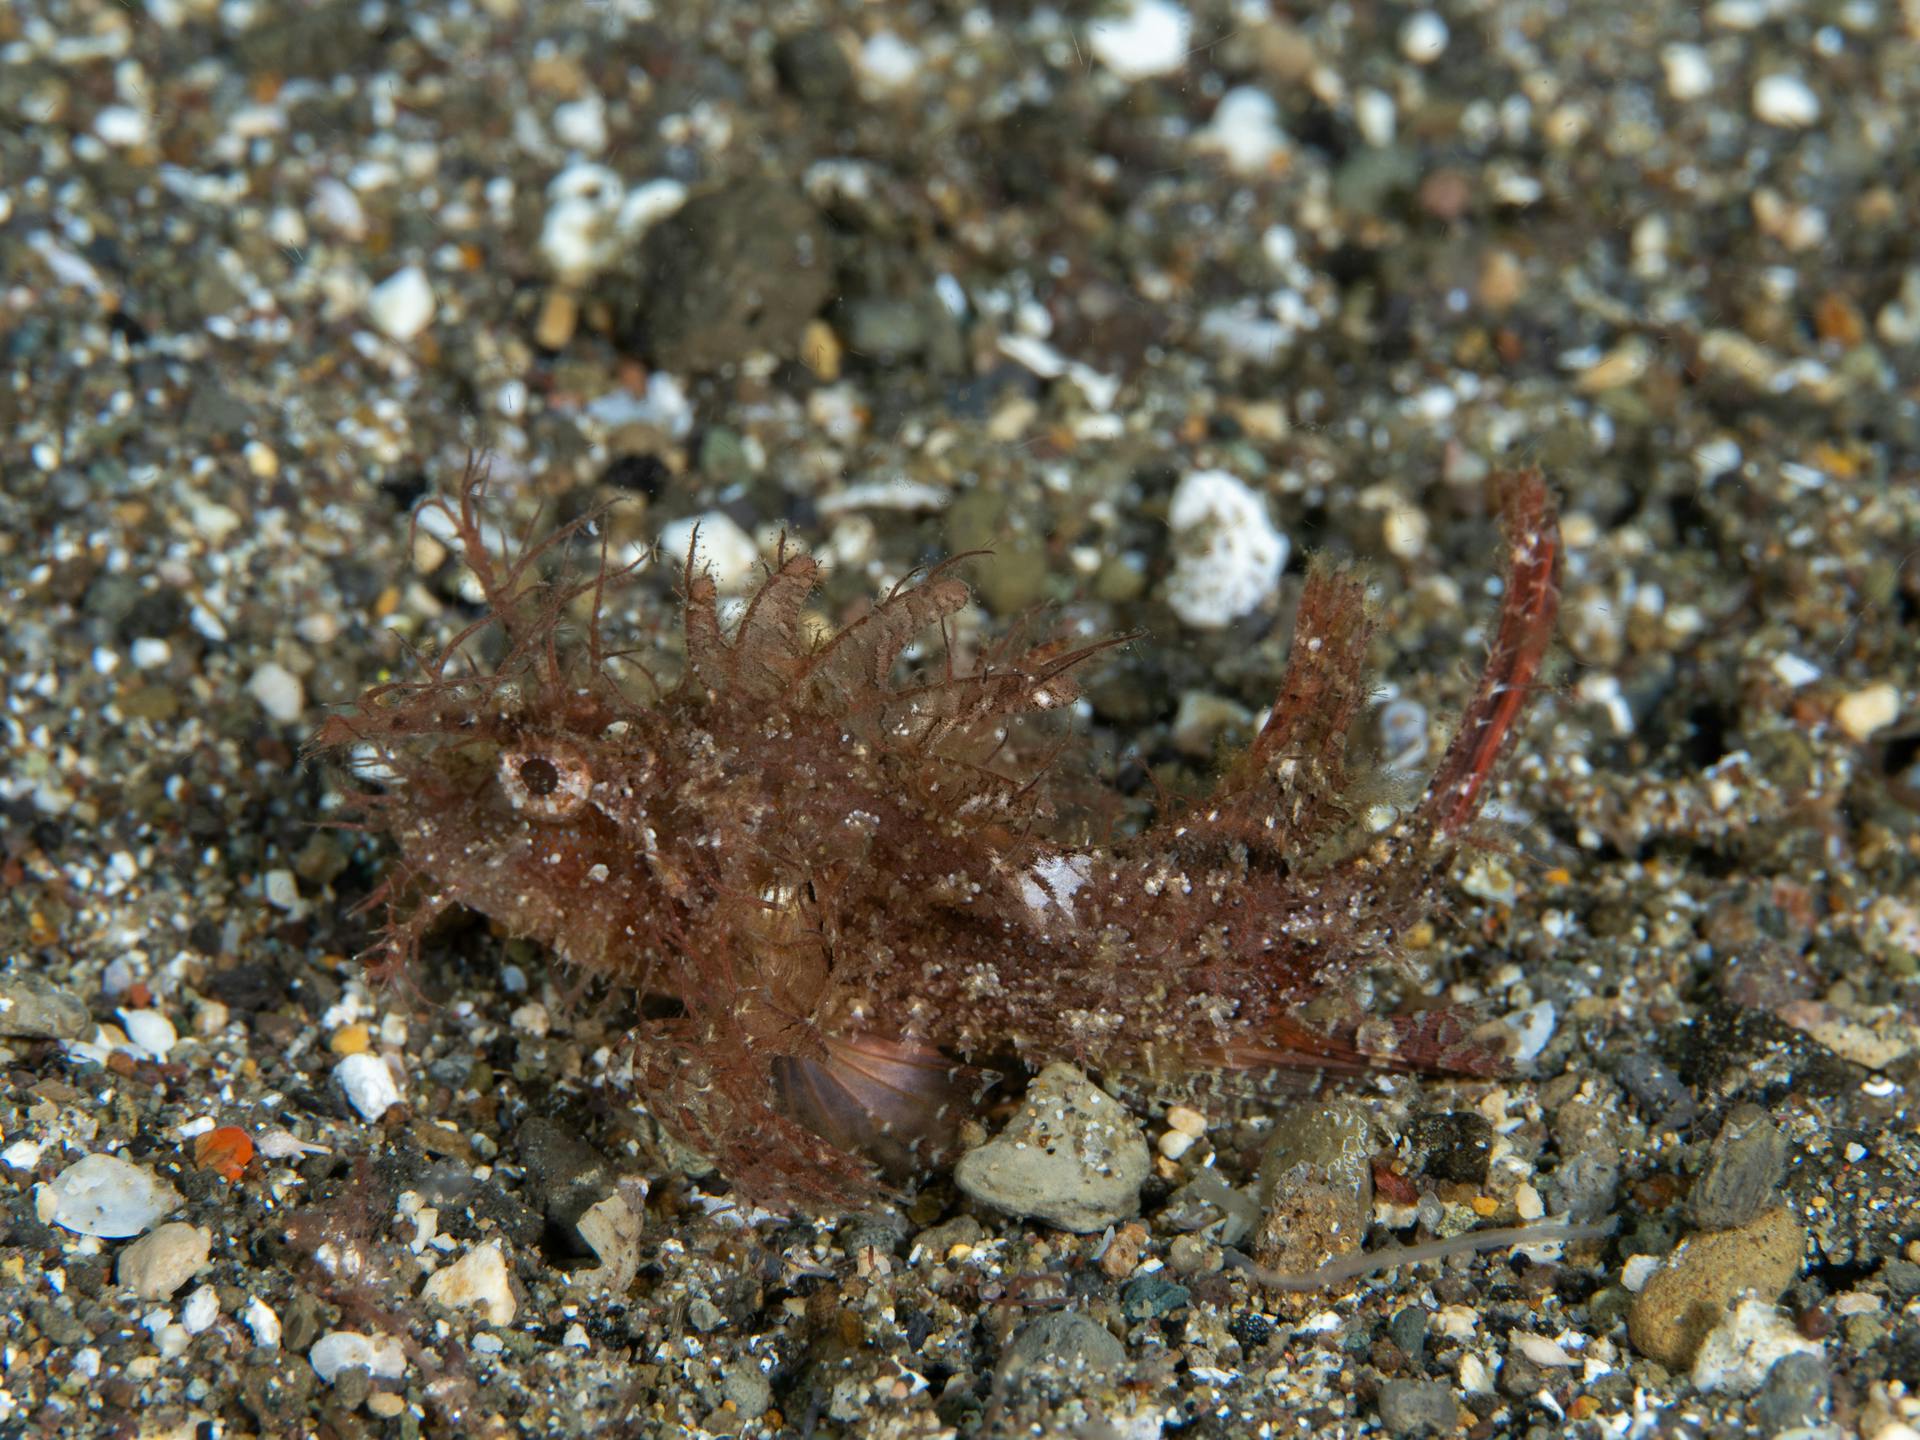 Hairy scorpionfish